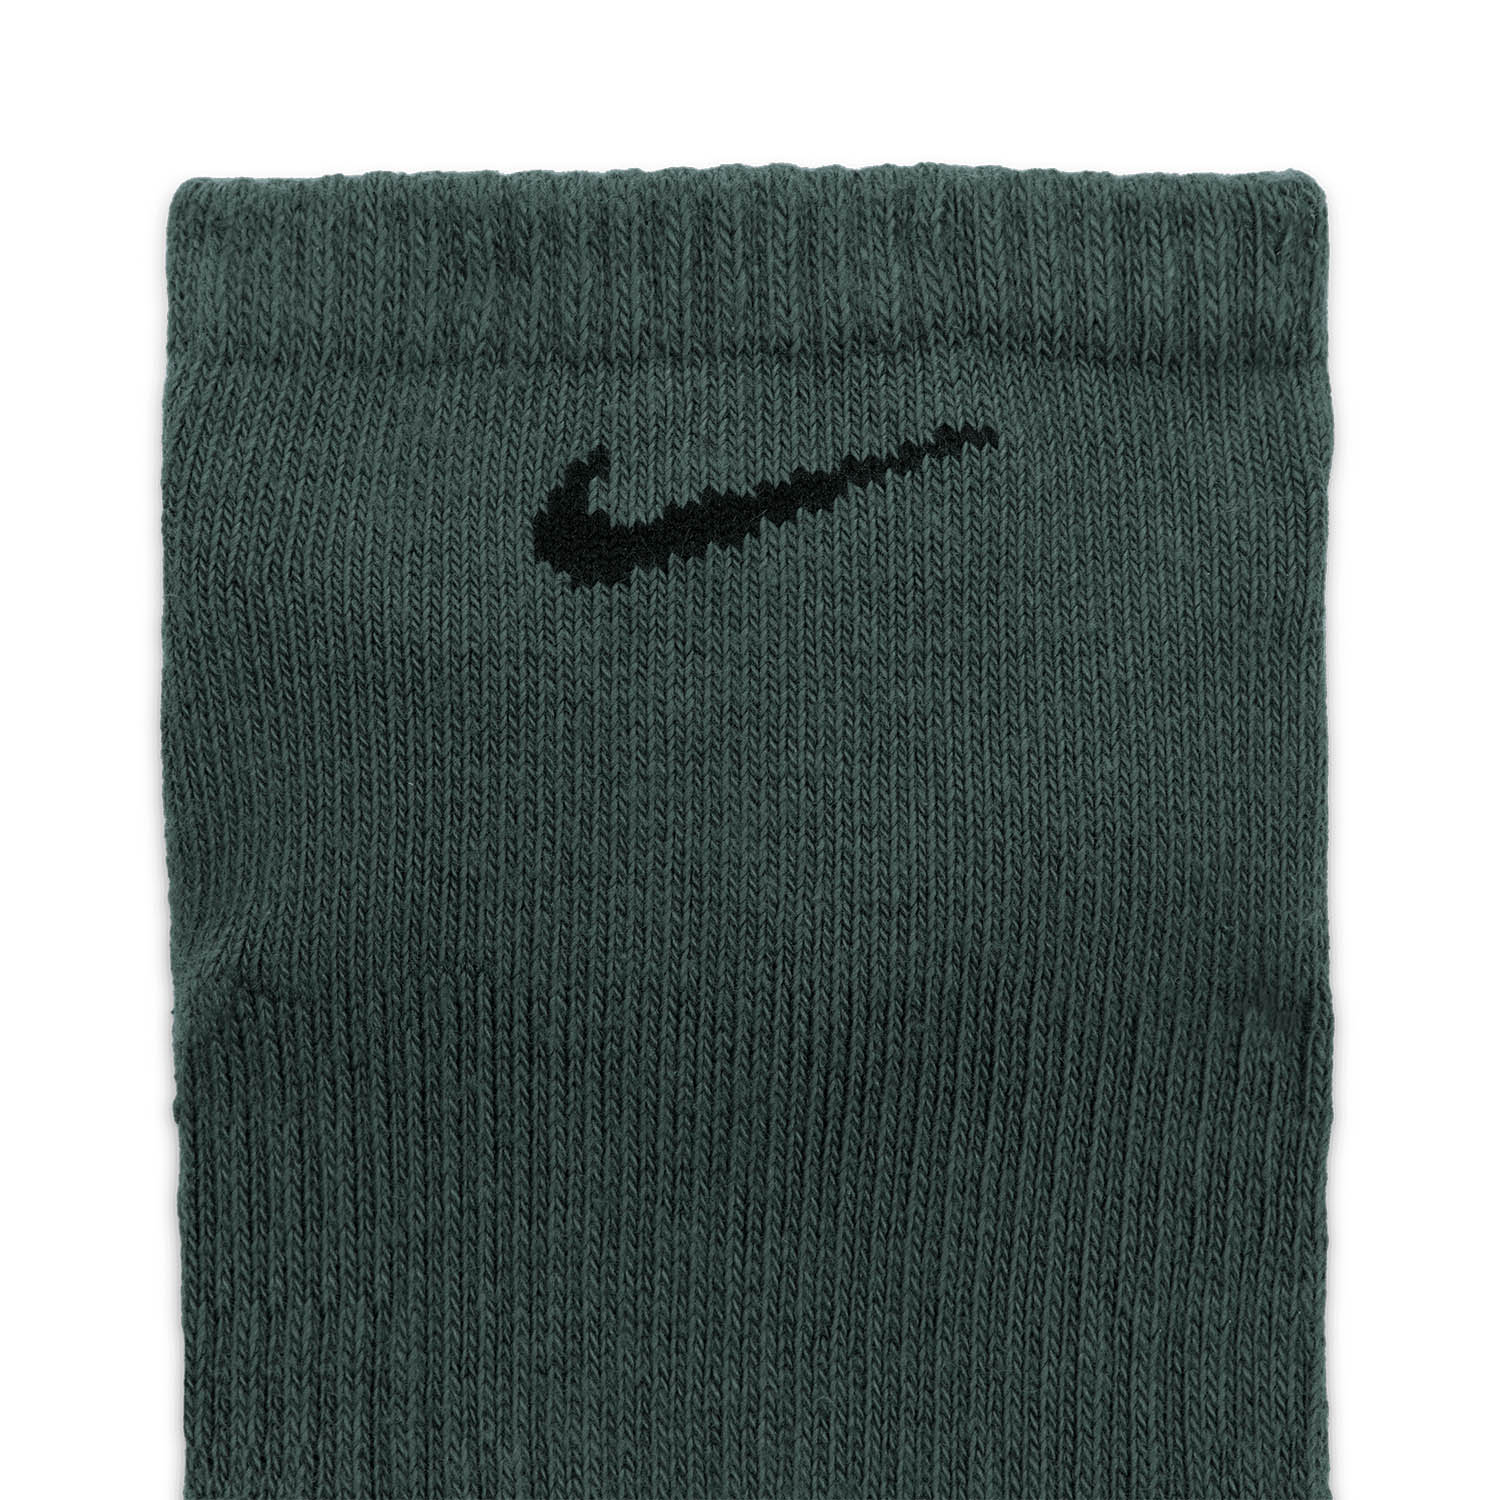 Nike Everyday Plus Cushion x 3 Calze - Green/Black